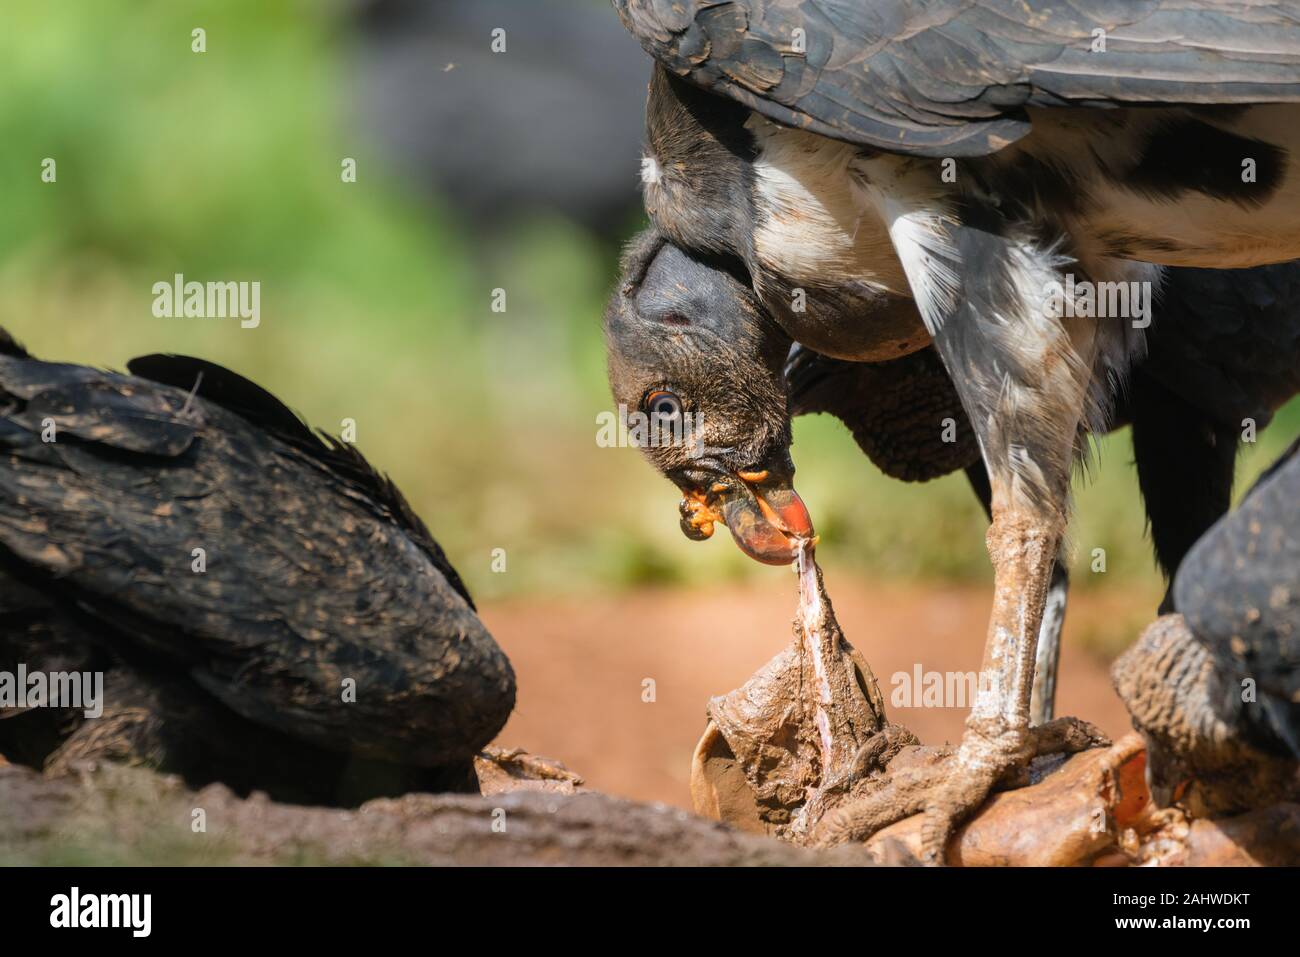 Le roi des jeunes Vautour (Sarcoramphus papa) se nourrit d'une charogne avec des vautours noirs (Coragyps atratus) autour, Laguna del Lagarto, Costa Rica Banque D'Images